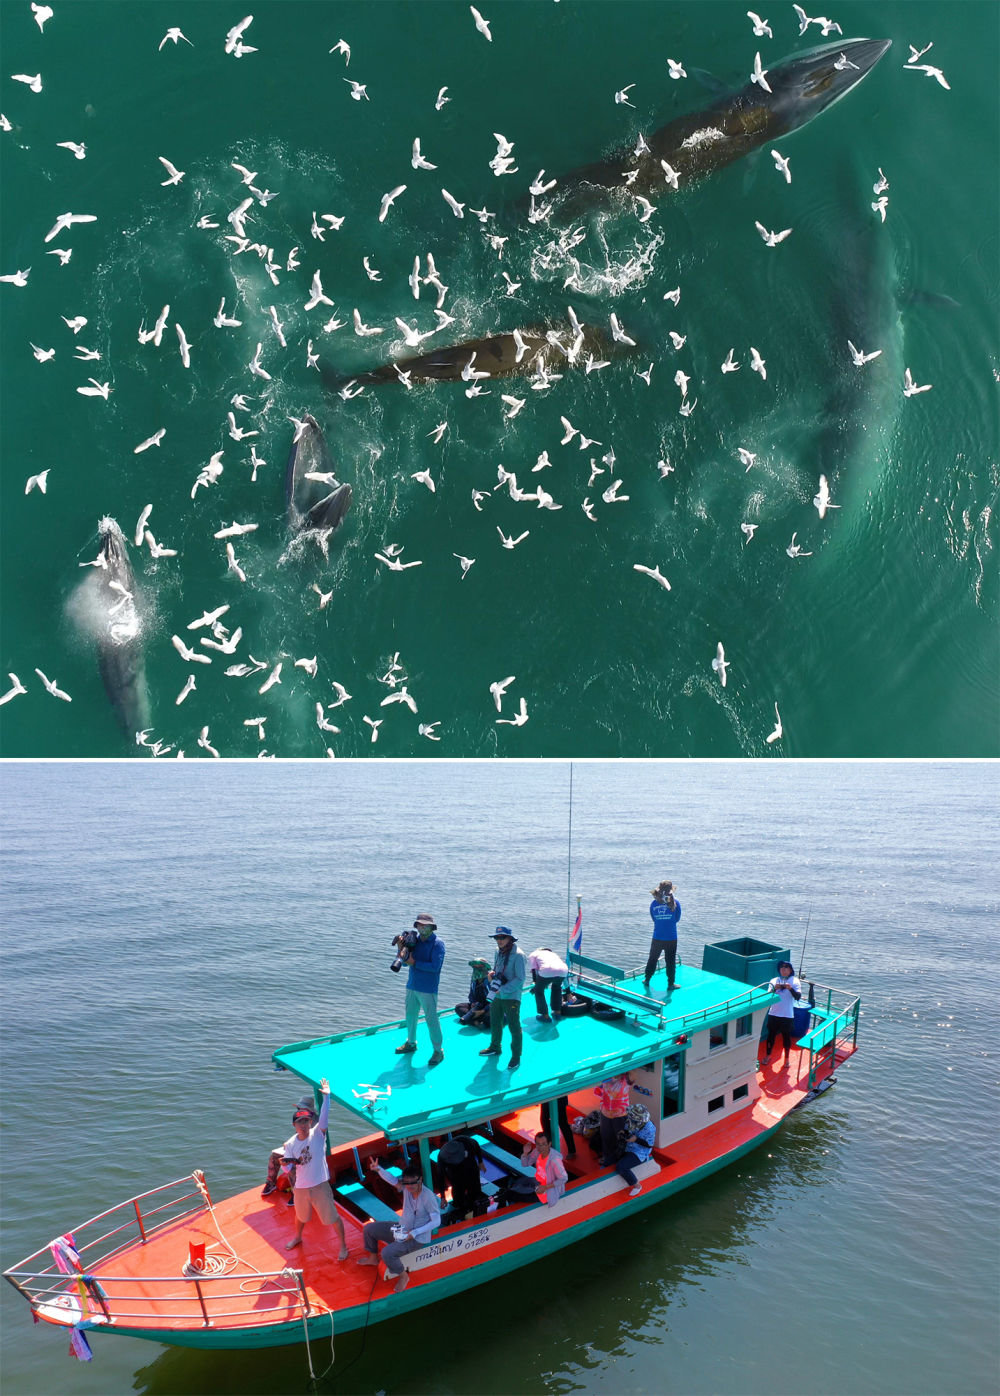 ↑（拼版照片）上图：布氏鲸在中国广西涠洲岛附近海域捕食（2022年2月22日摄）。下图：中泰两国科研人员在泰国湾对布氏鲸进行联合调查（2019年10月25日摄）。中泰两国科研人员携手研究保护布氏鲸这个近岸大型鲸类，围绕布氏鲸调查技术、调查方法以及其他海洋哺乳动物的研究和数据处理方法进行交流与合作。